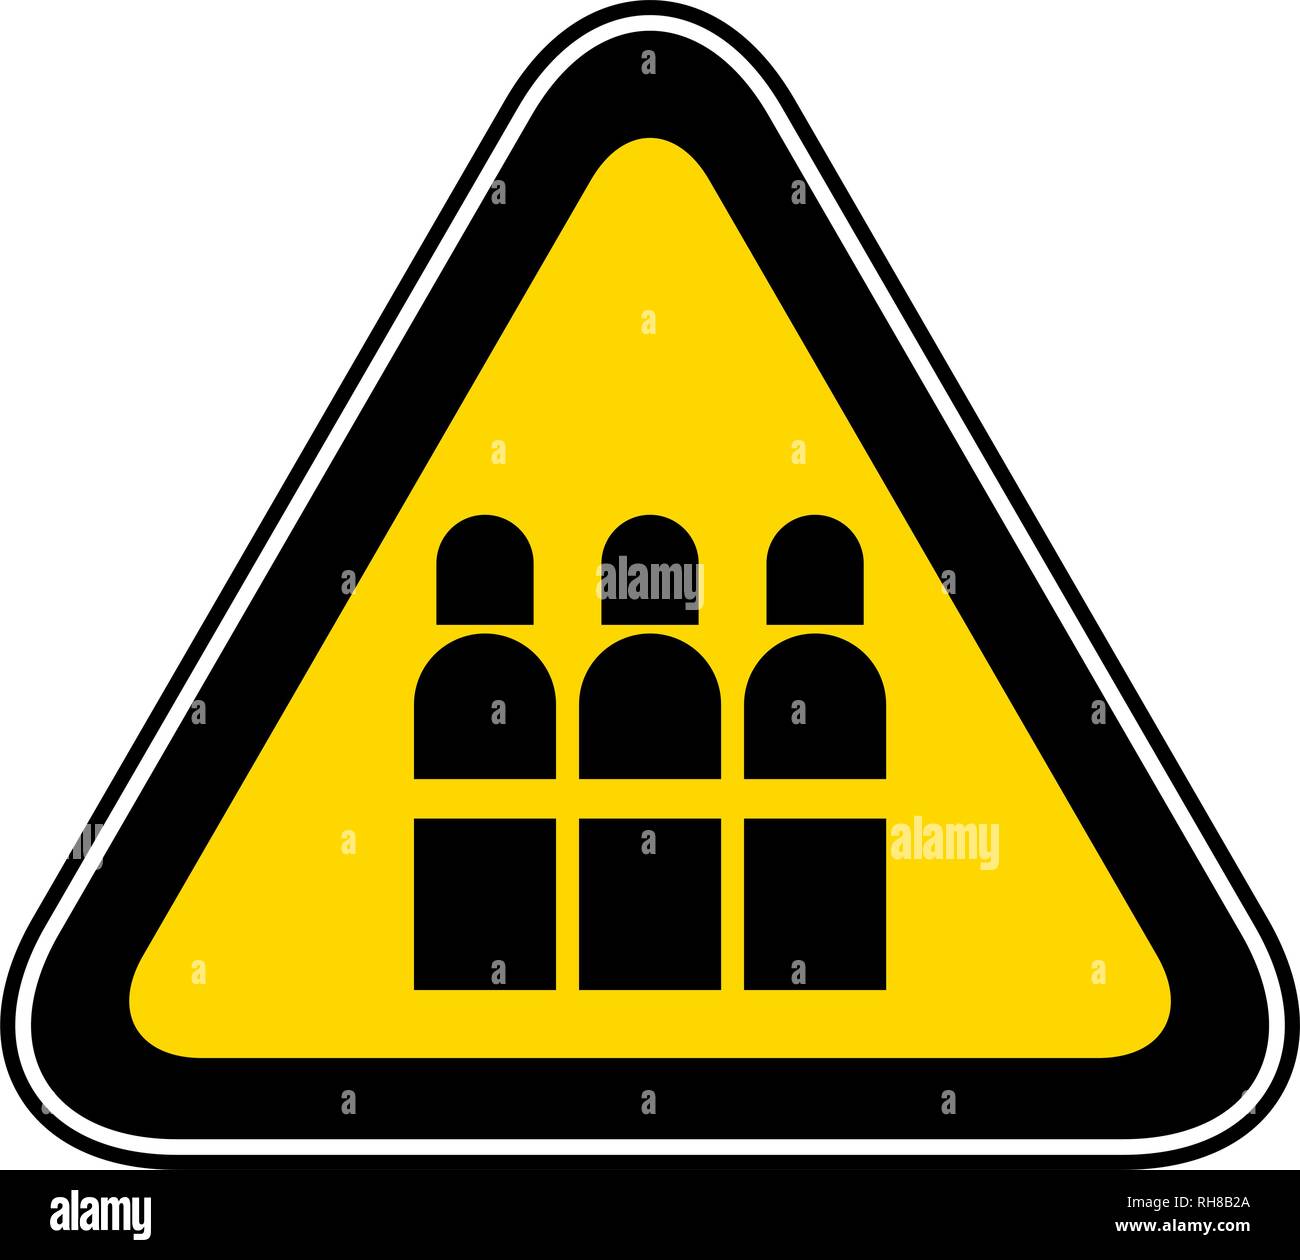 Spia triangolare simbolo di pericolo Illustrazione Vettoriale